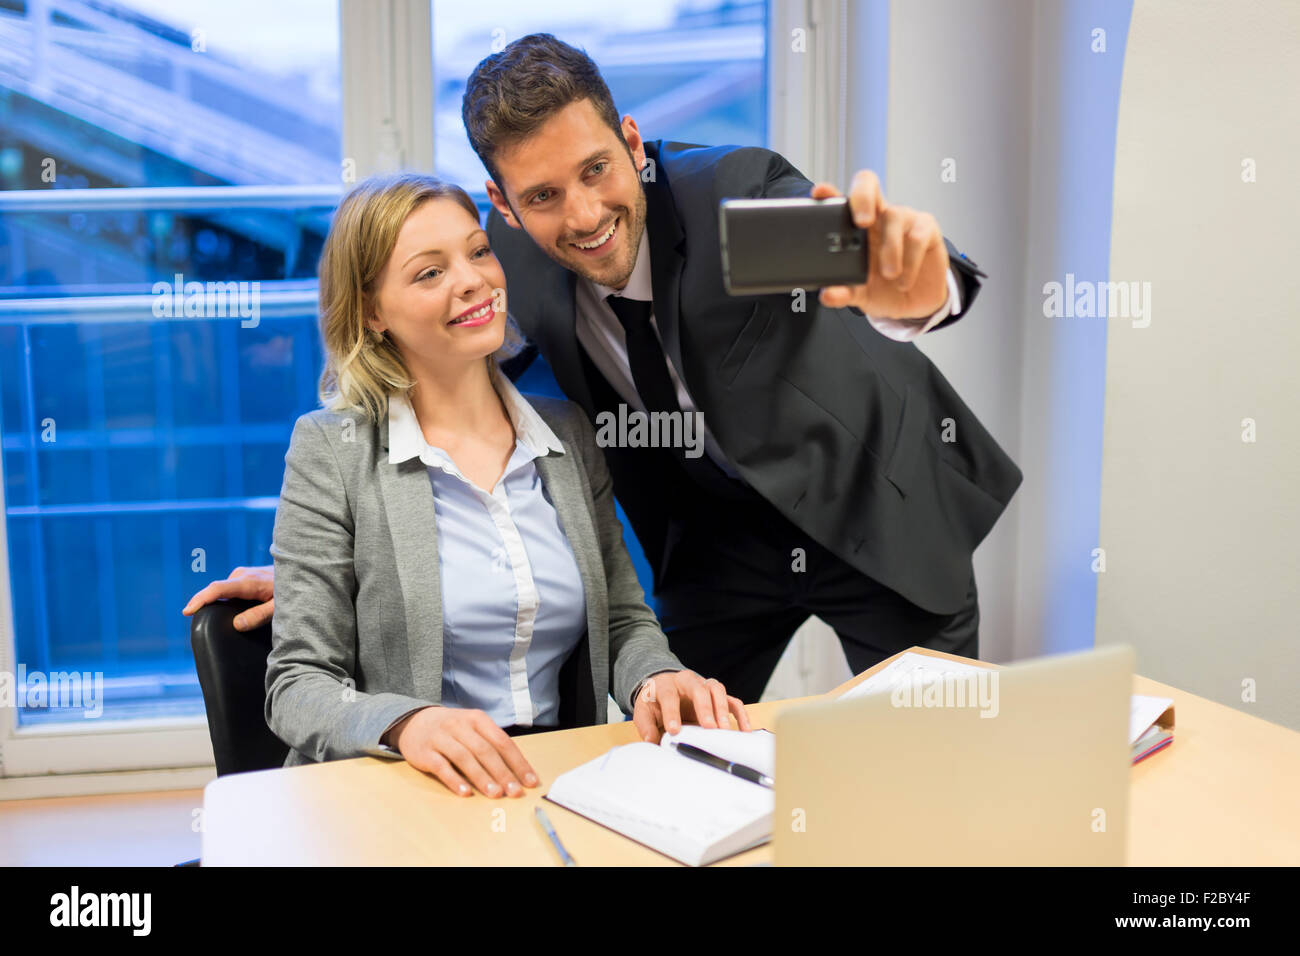 Retrato de dos personas de negocios sonriendo teniendo un selfie con el smartphone Foto de stock